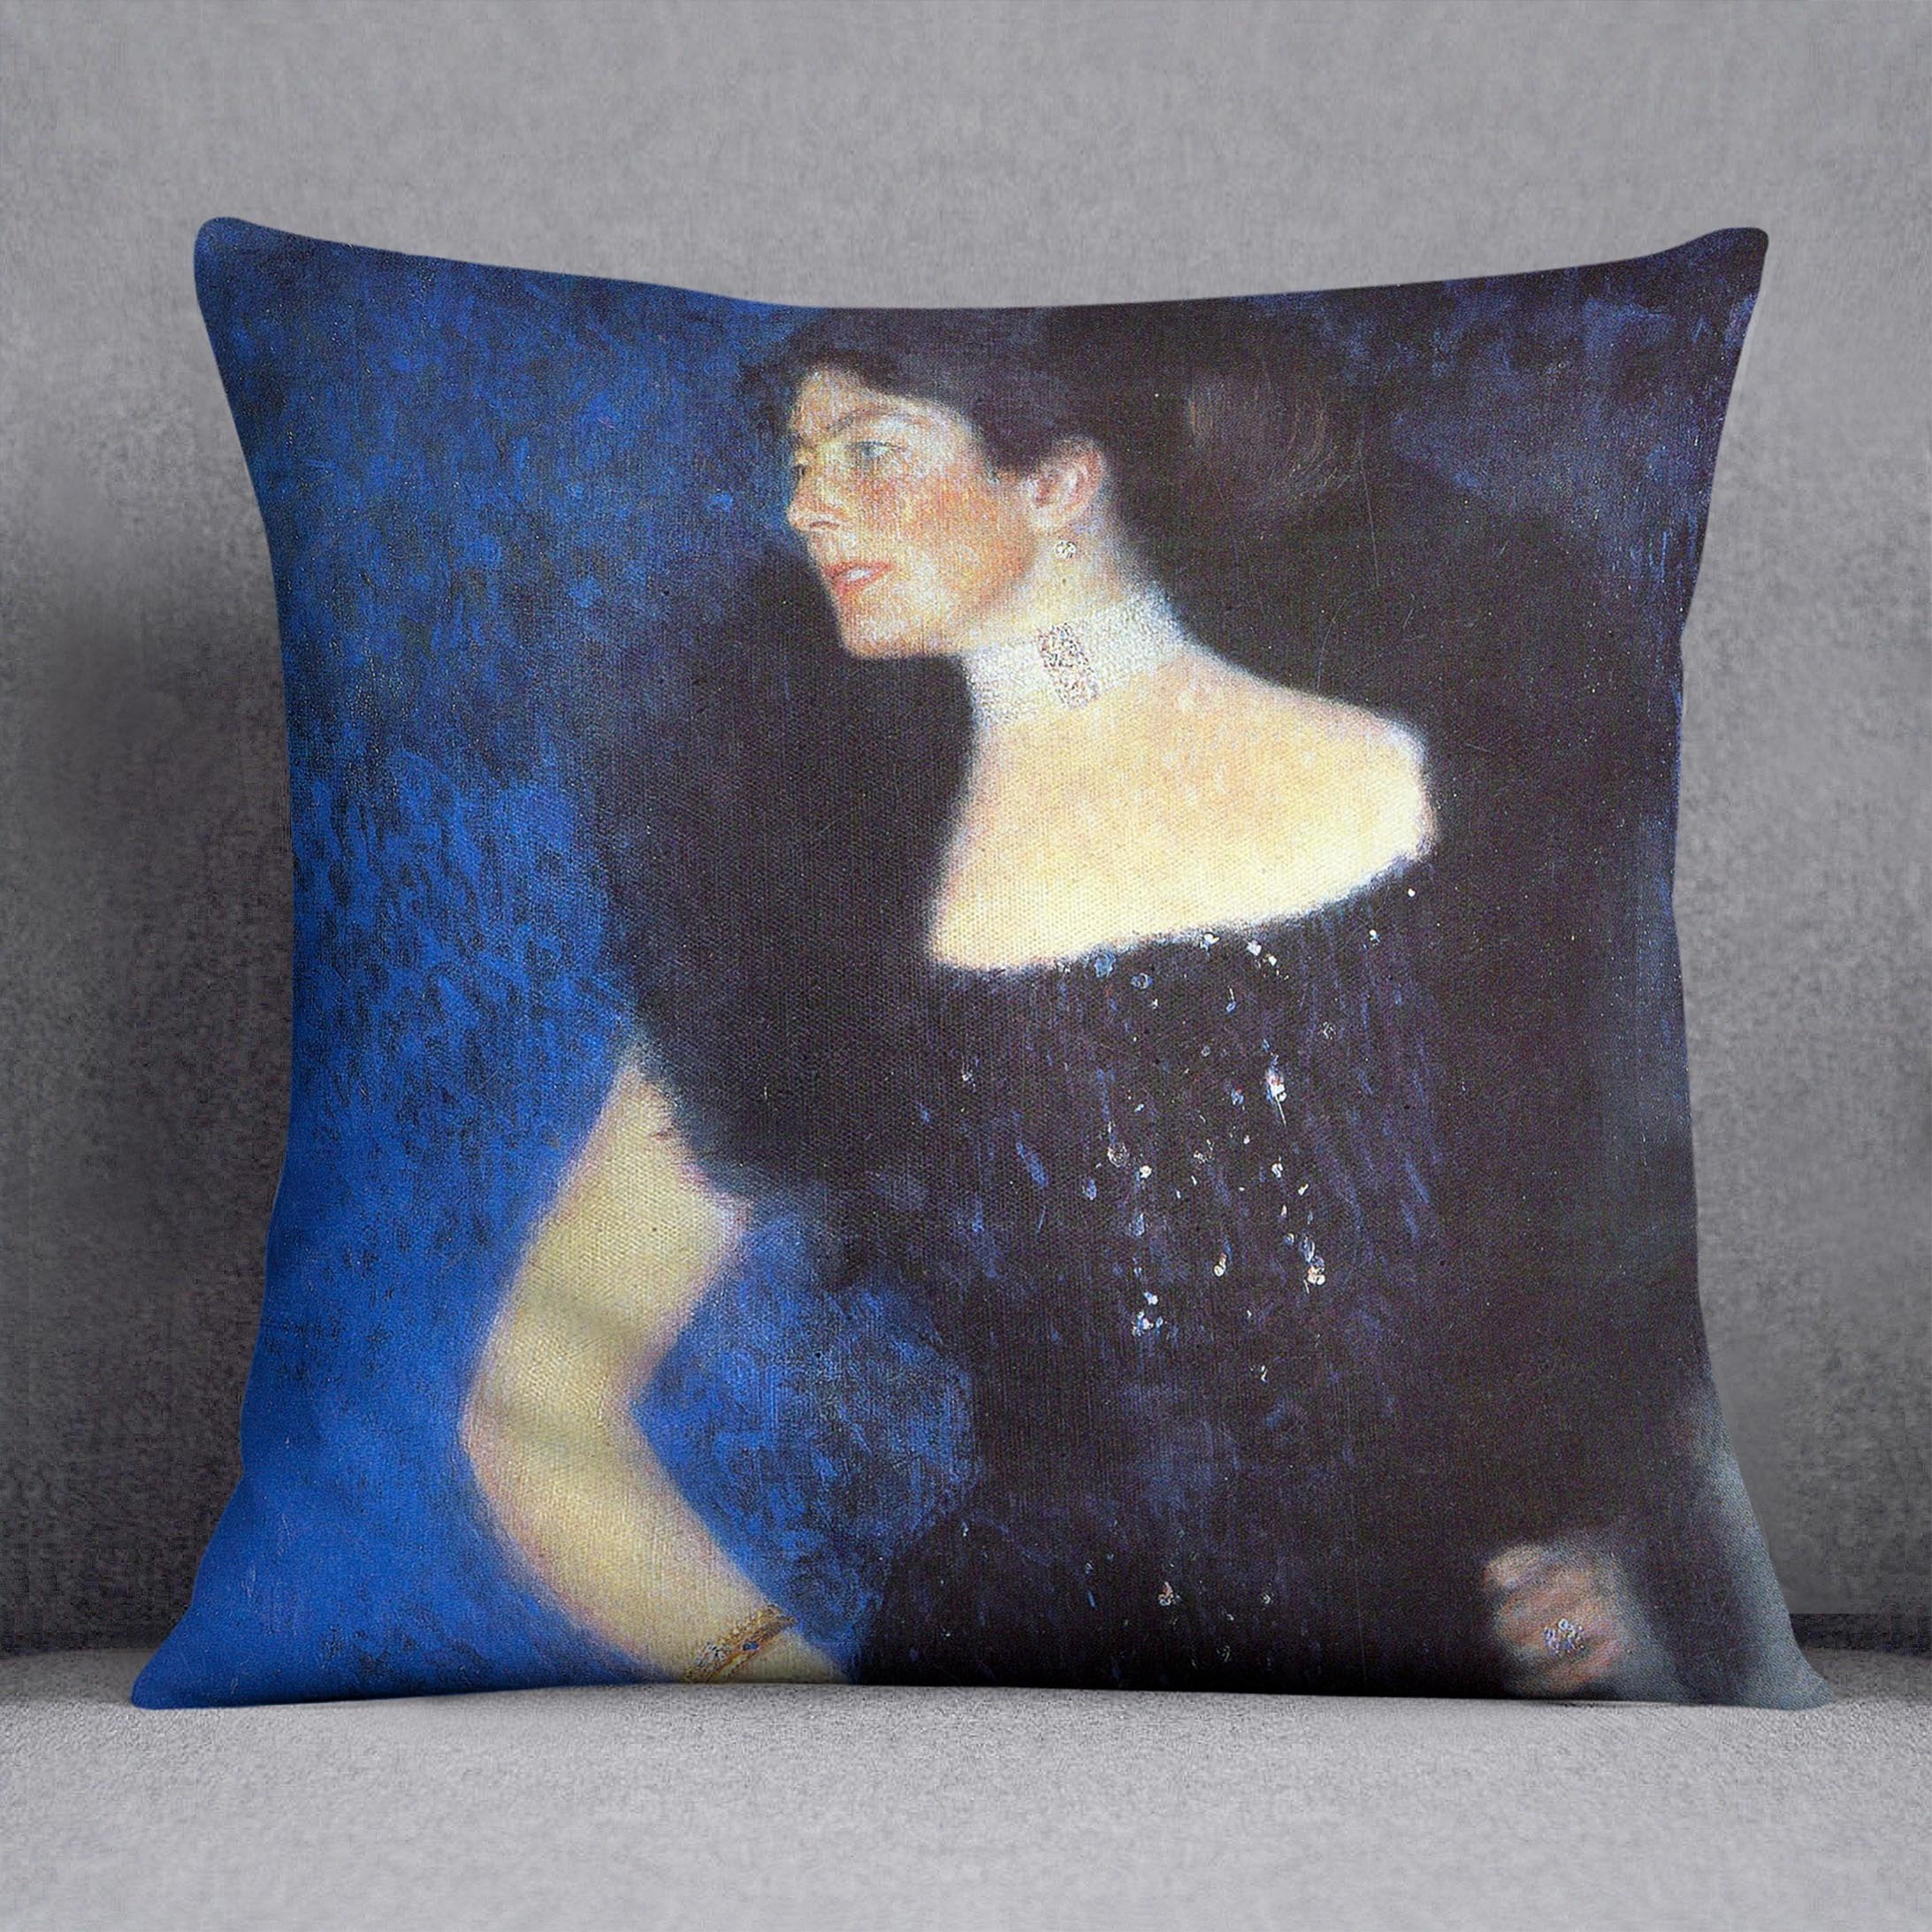 Portrait of Rose von Rosthorn Friedmann by Klimt Throw Pillow